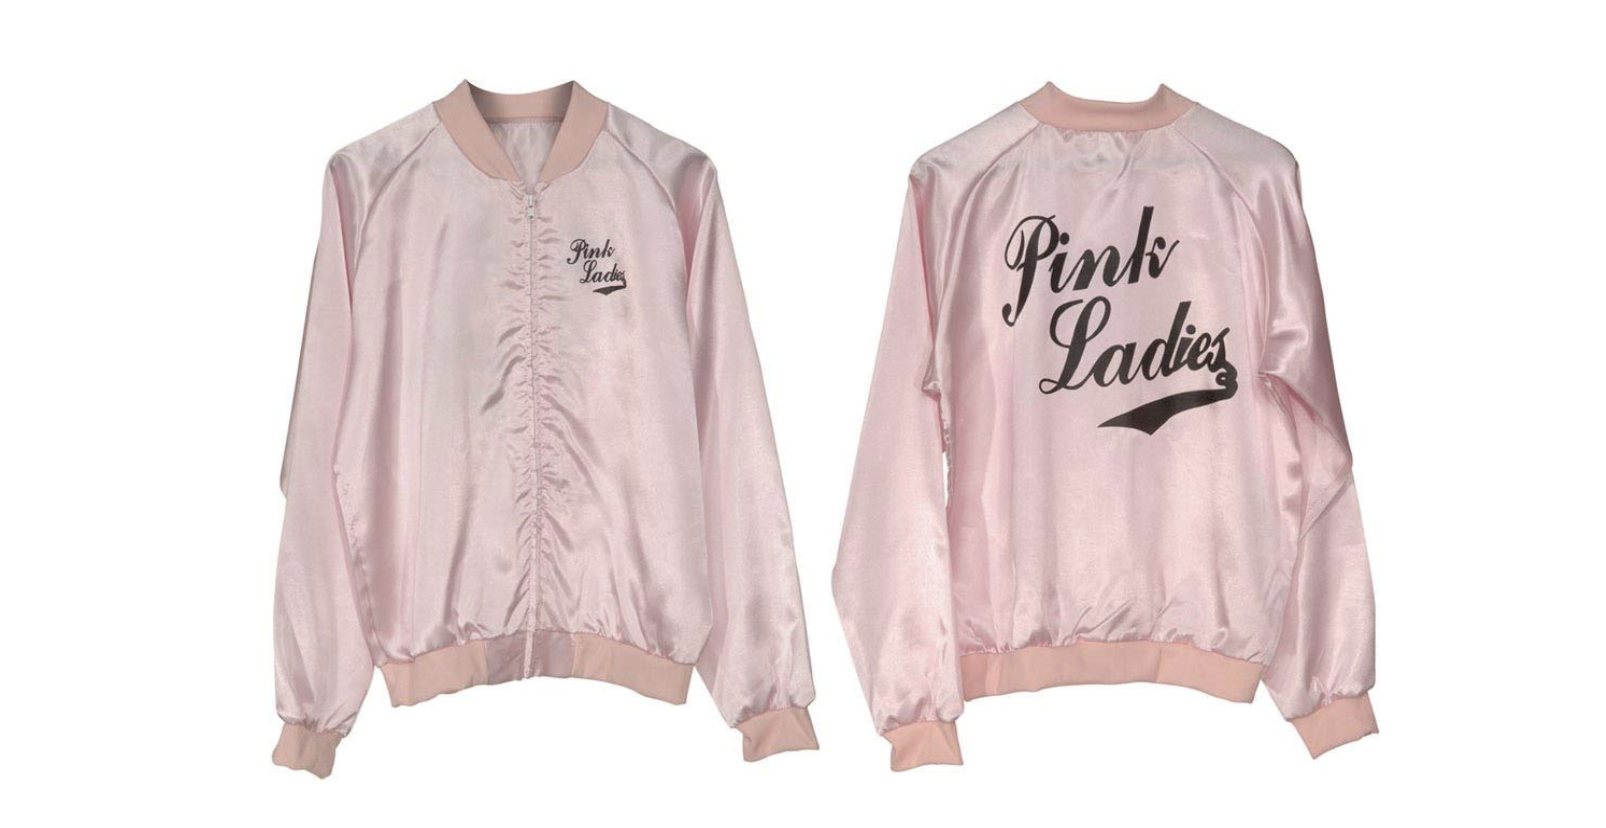 Ahora podrás tener la chaqueta de las Pink Ladies- La chaqueta de las Pink Ladies está Amazon